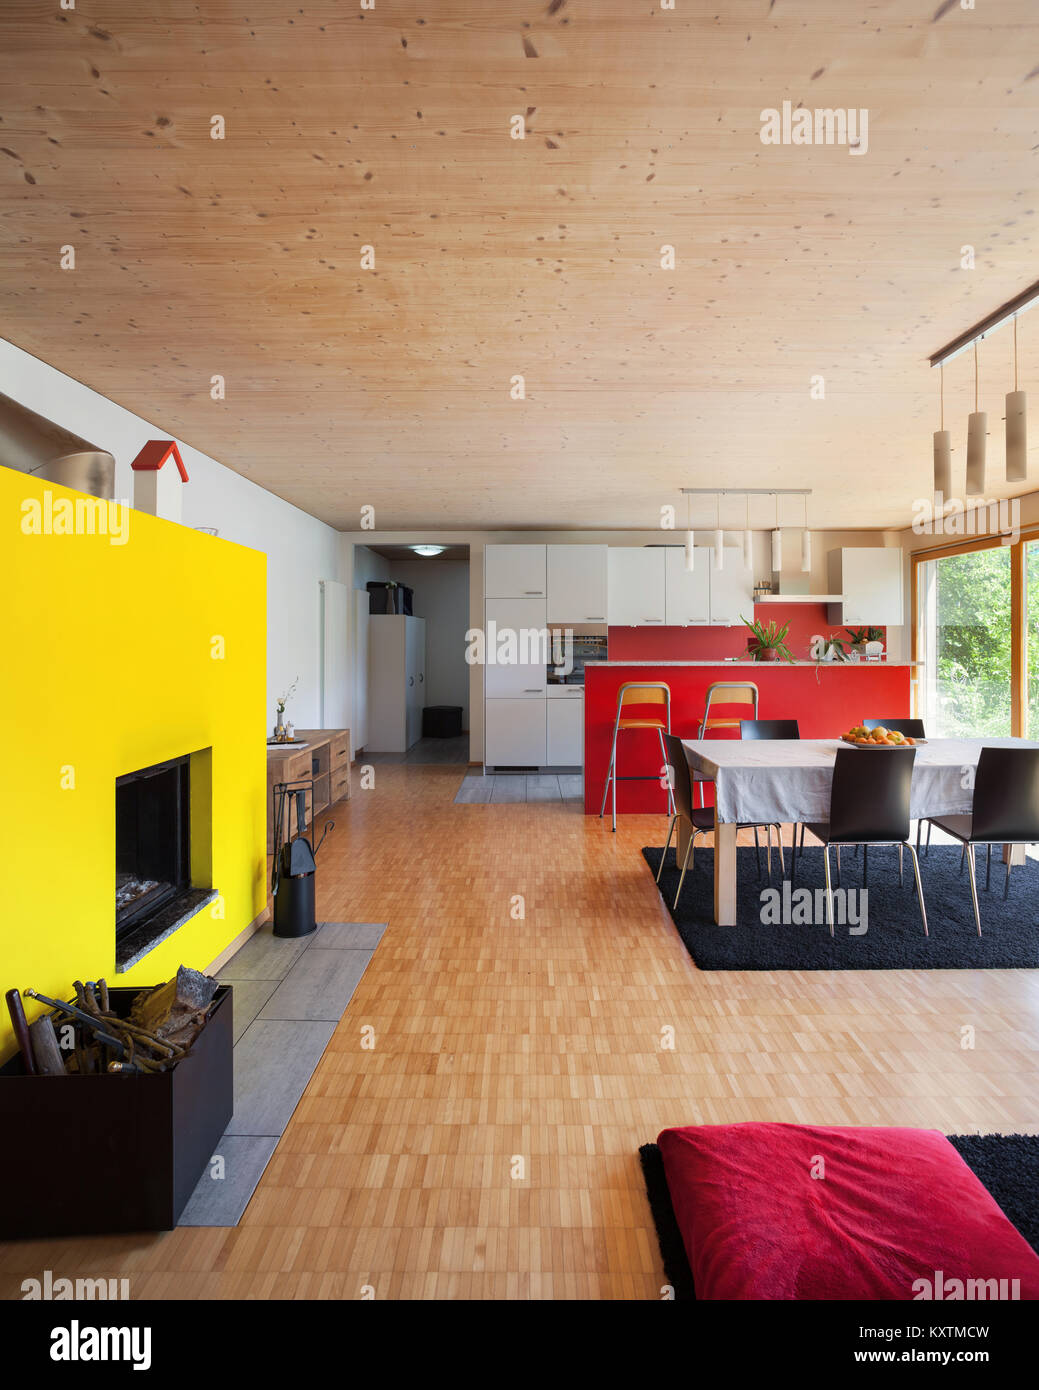 Espace ouvert d'une maison moderne, salle de séjour avec cheminée jaune Banque D'Images